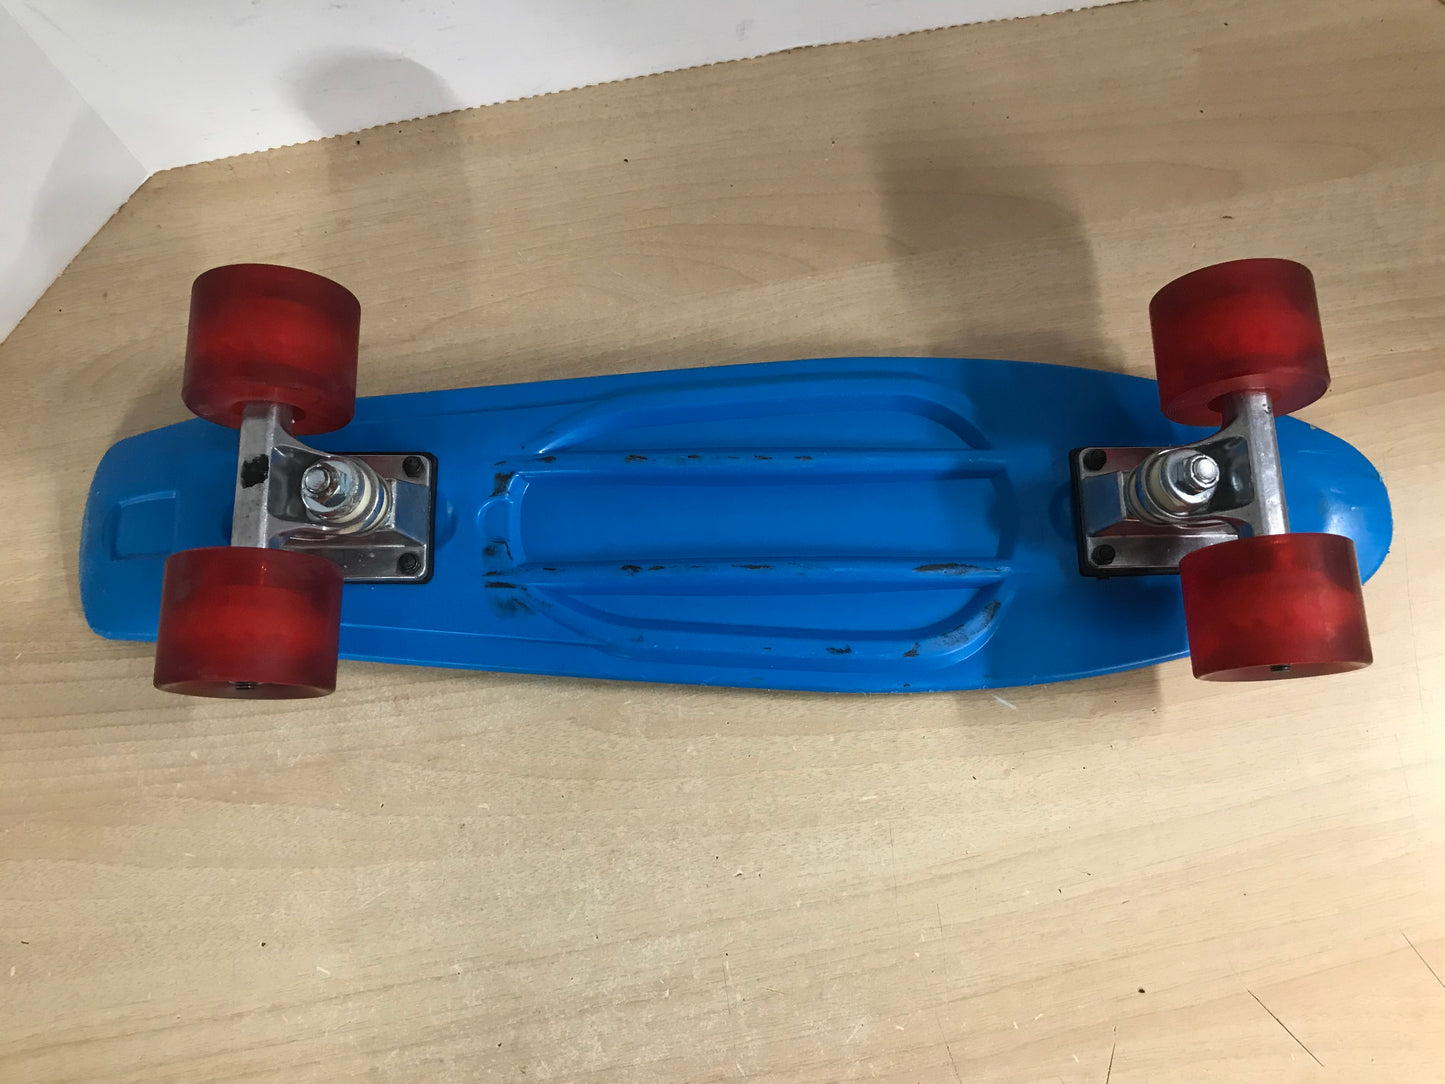 SkateBoard Penny Style Blue Rubber Wheels 22 inch